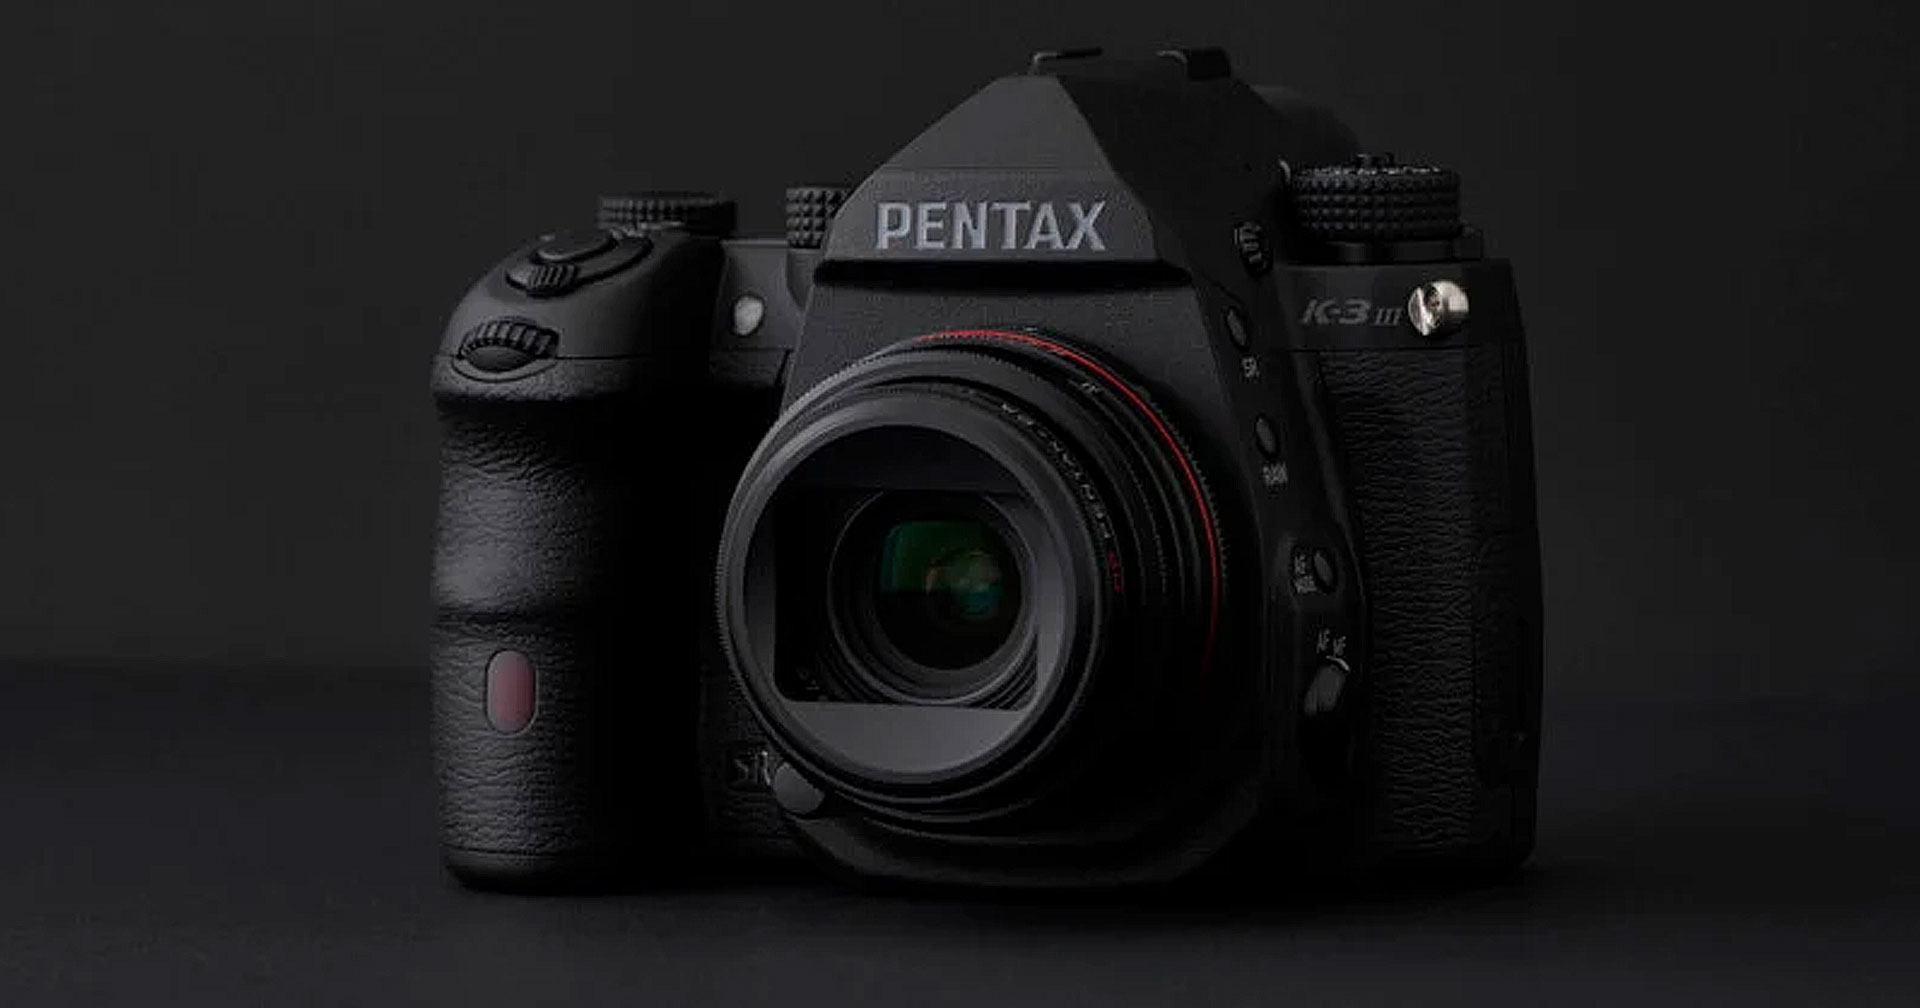 เปิดตัว Pentax K-3 III Monochrome กล้อง DSLR ที่ถ่ายได้เฉพาะภาพขาวดำ ตัวแรกในตลาด